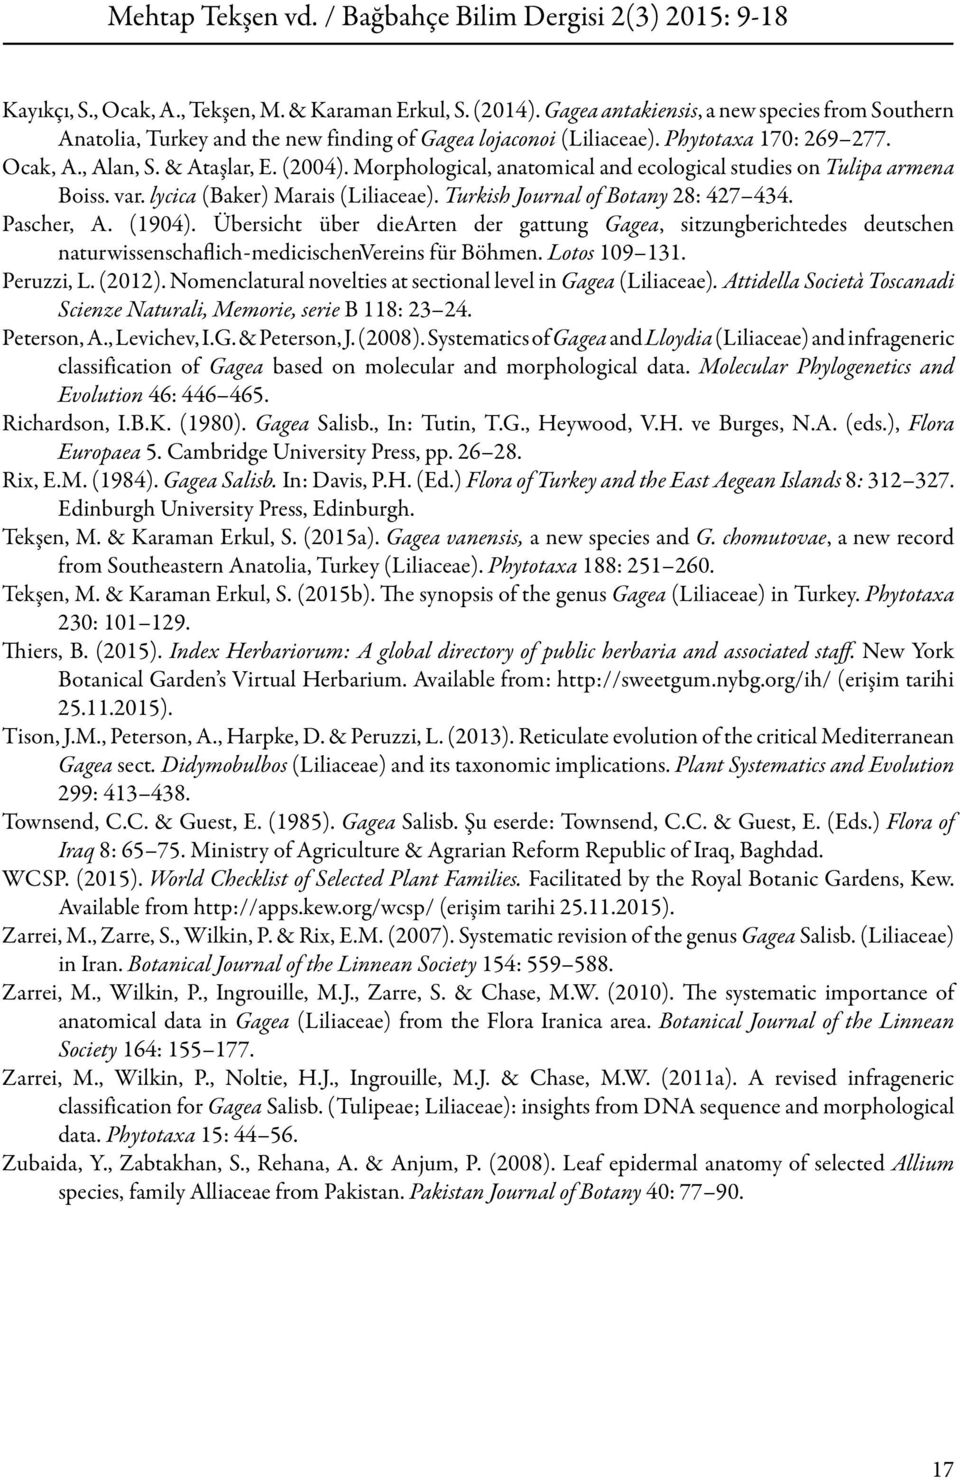 Turkish Journal of Botany 28: 427 434. Pascher, A. (1904). Übersicht über diearten der gattung Gagea, sitzungberichtedes deutschen naturwissenschaflich-medicischenvereins für Böhmen. Lotos 109 131.